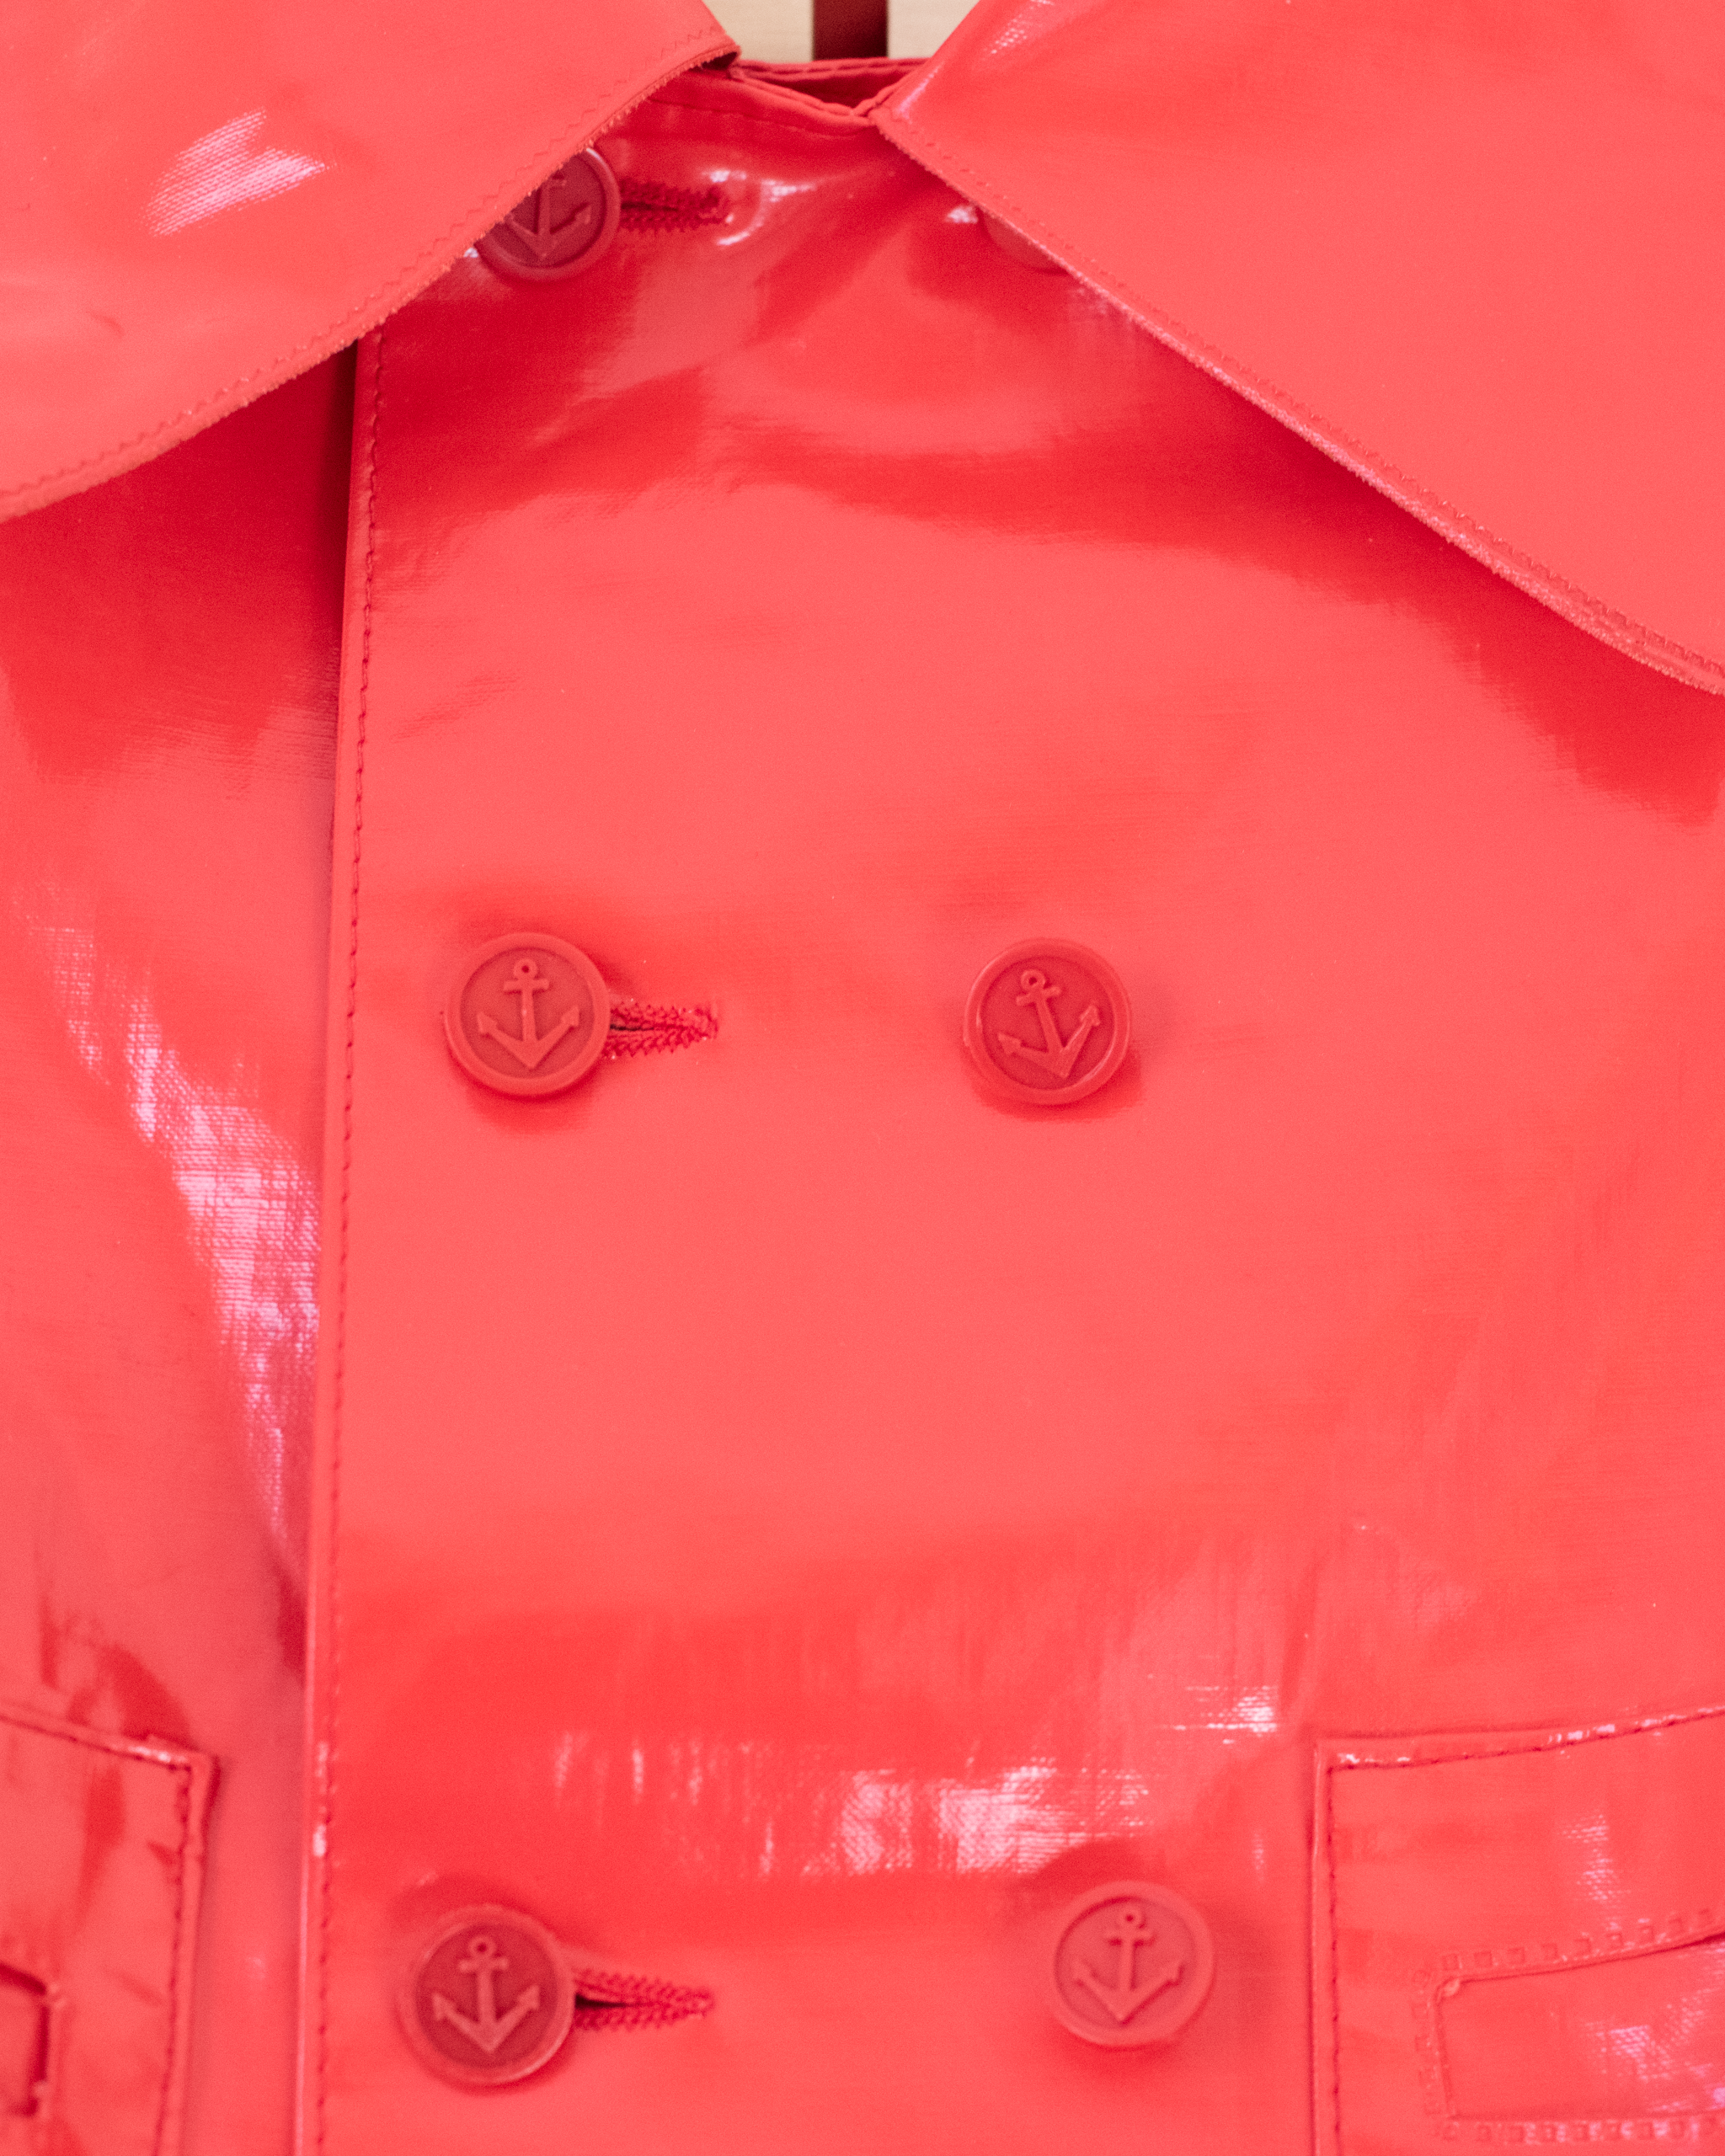 מעיל גשם אדום צרפתי עם כפתורי עוגנים | 2-3 שנים